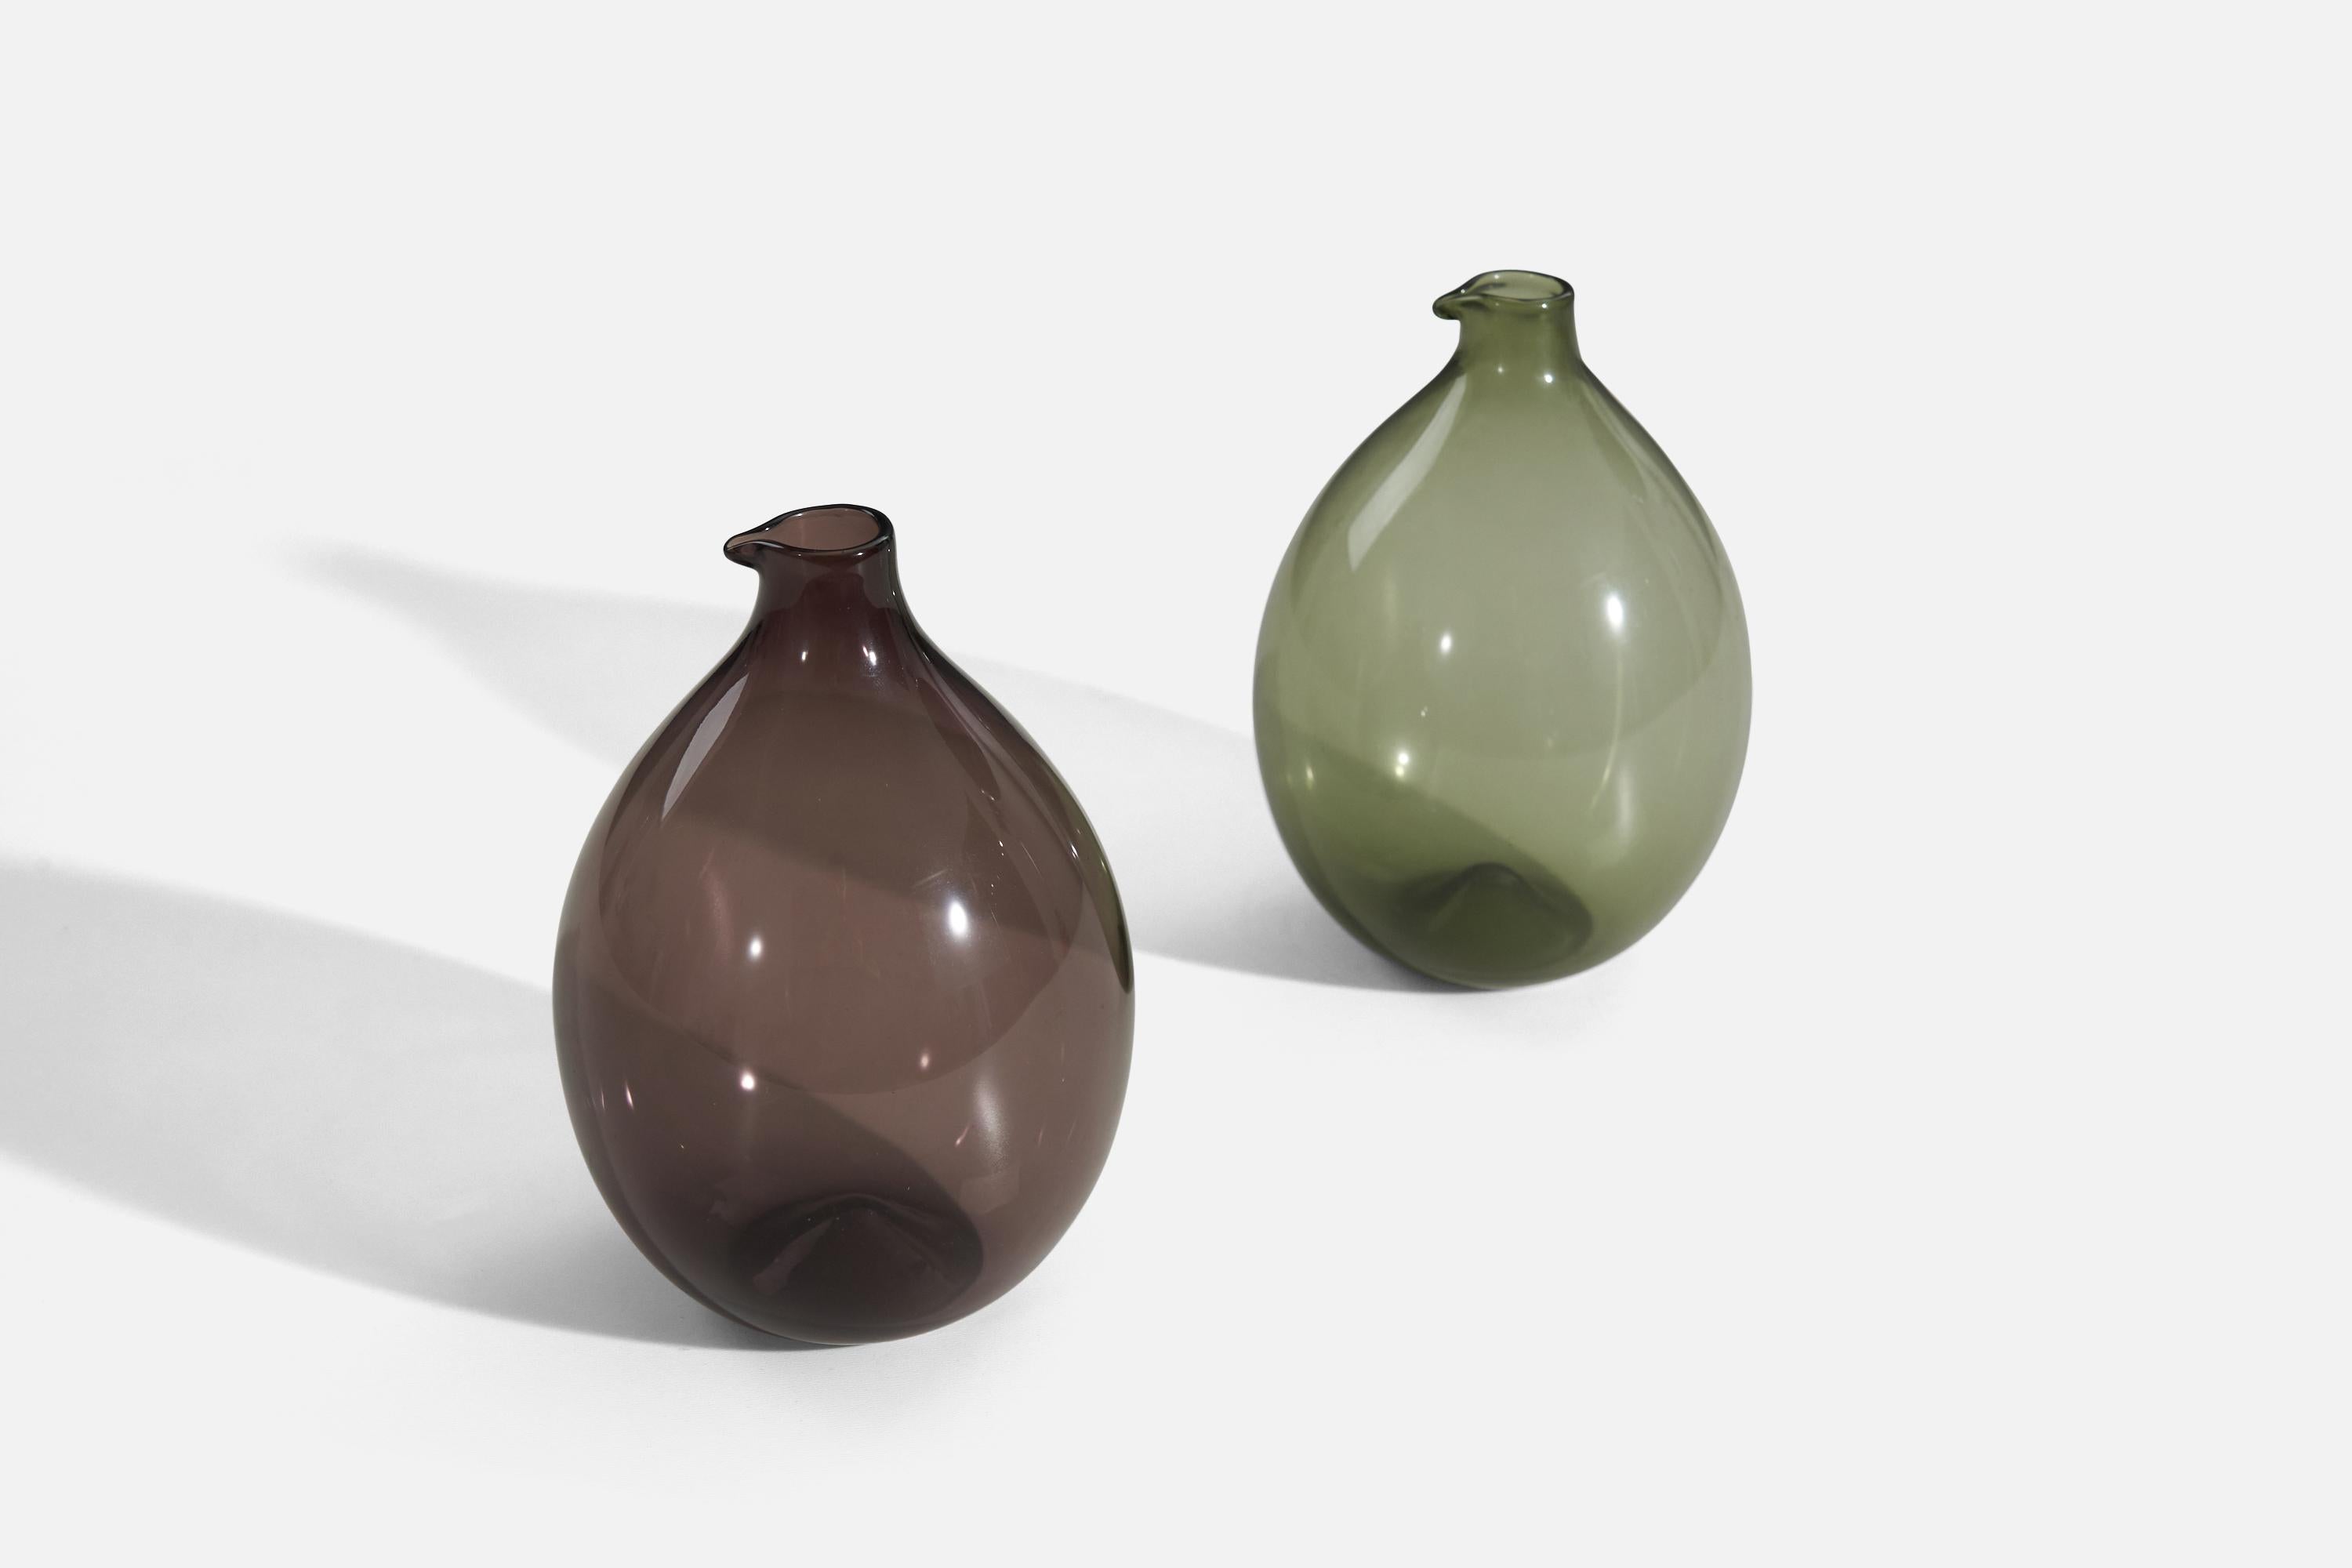 Paire de vases en verre soufflé vert et brun, conçus par Timo Sarpaneva pour Ittala.
 